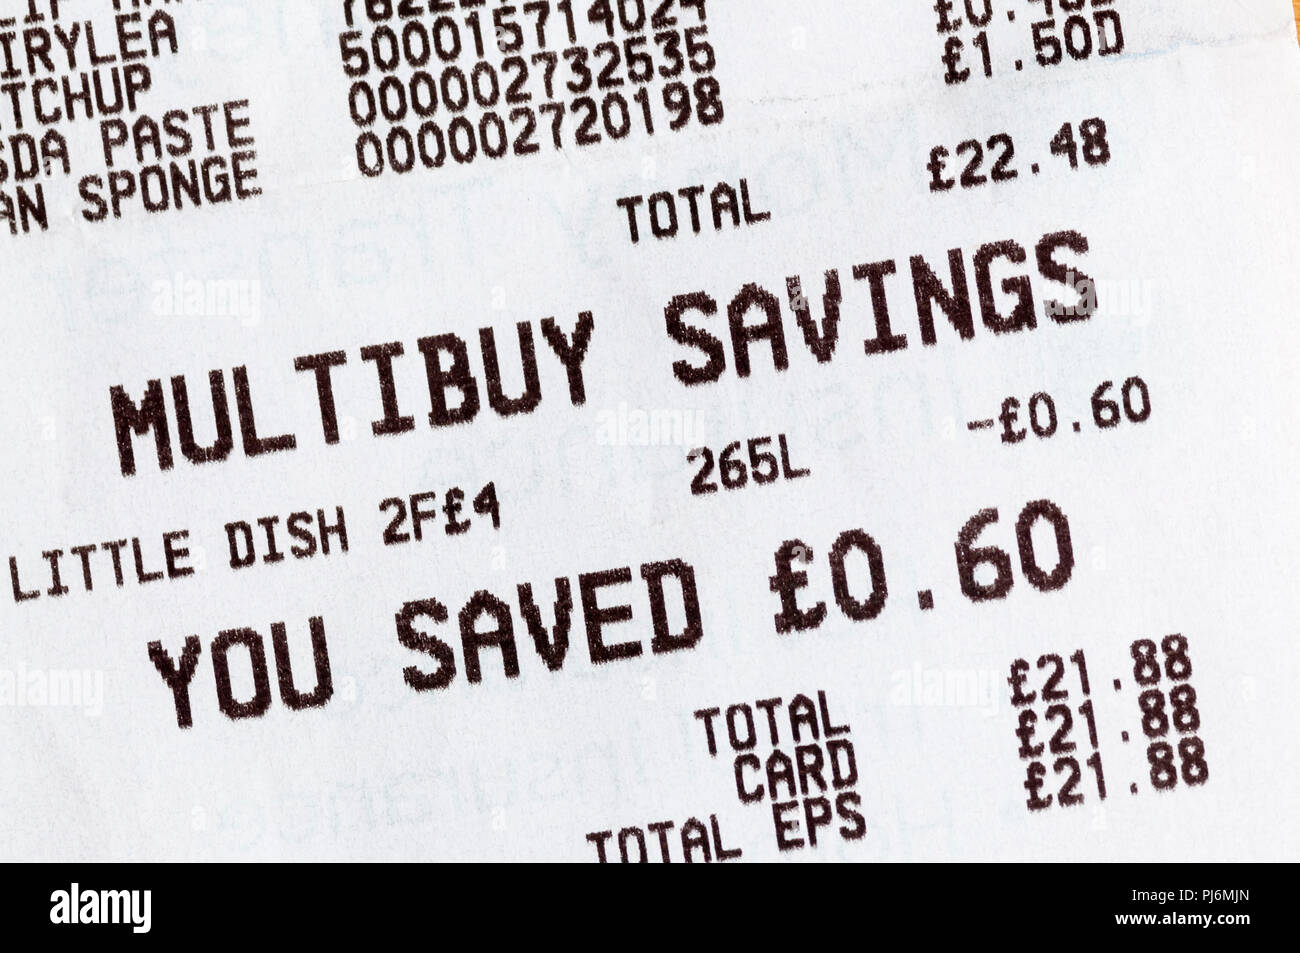 Le montant de l'épargne Multibuy énumérés sur un ticket de caisse de supermarché. Banque D'Images